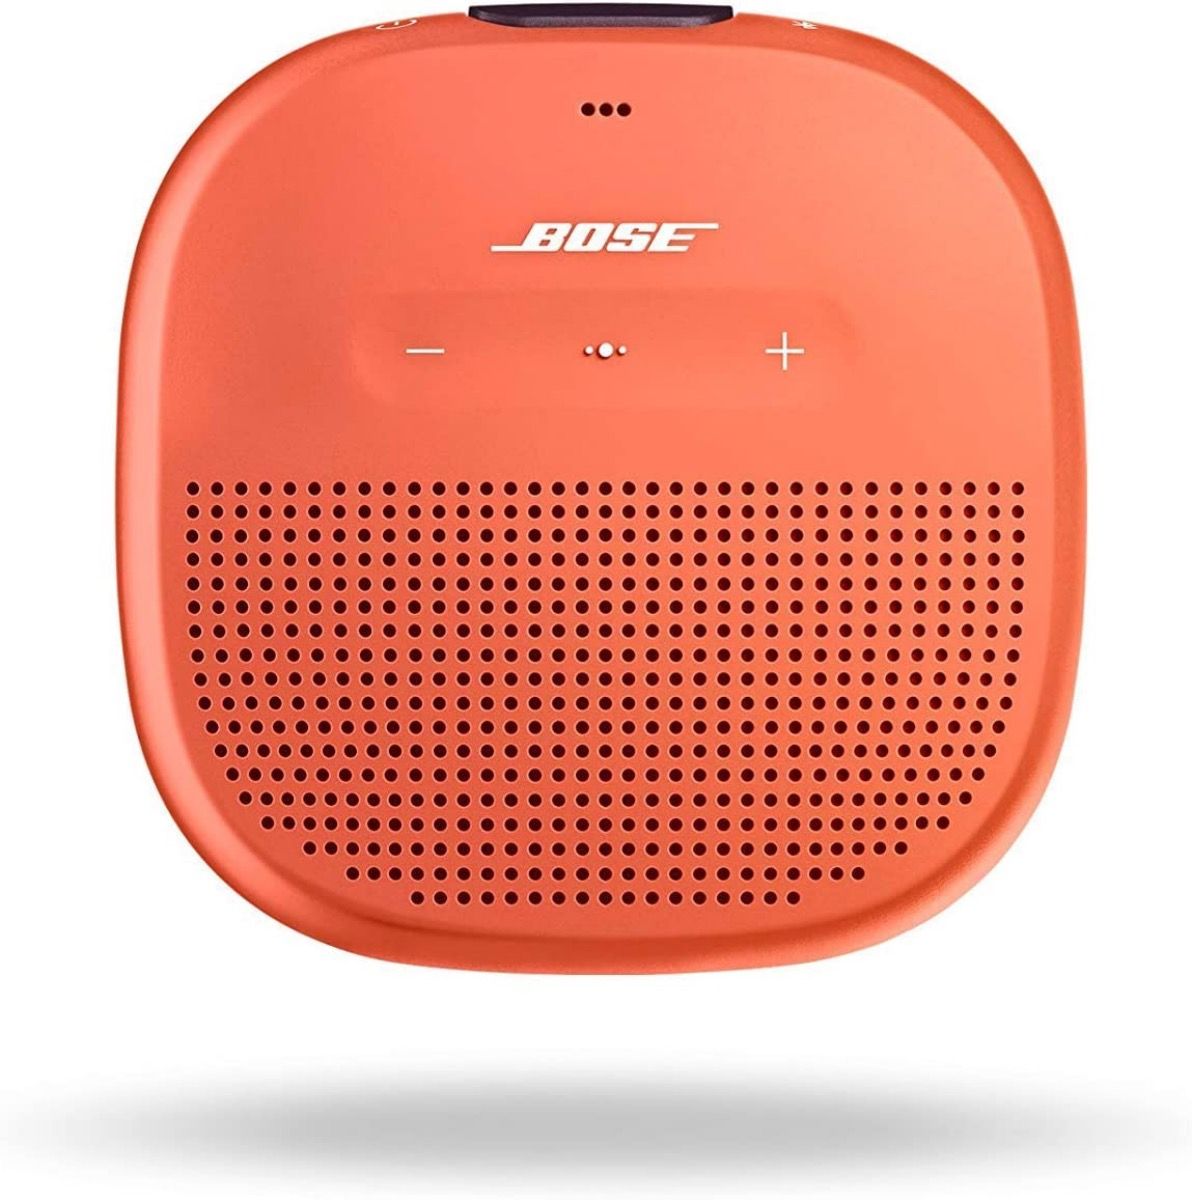 Face shot of an orange Bose SoundLink Micro